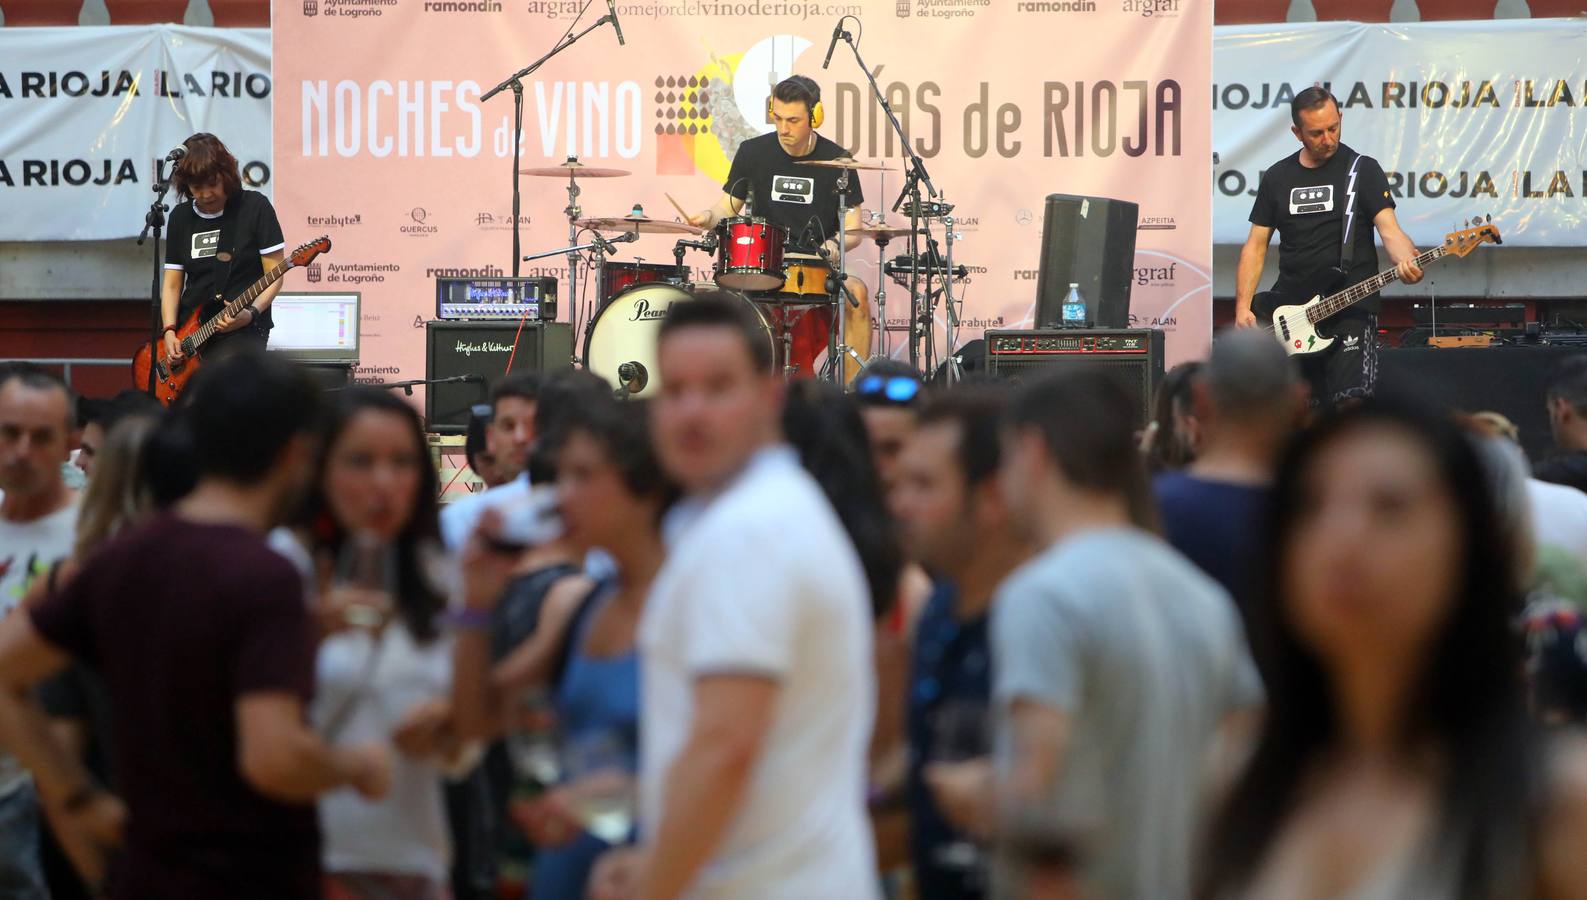 Fotos: El Rioja conquista la plaza